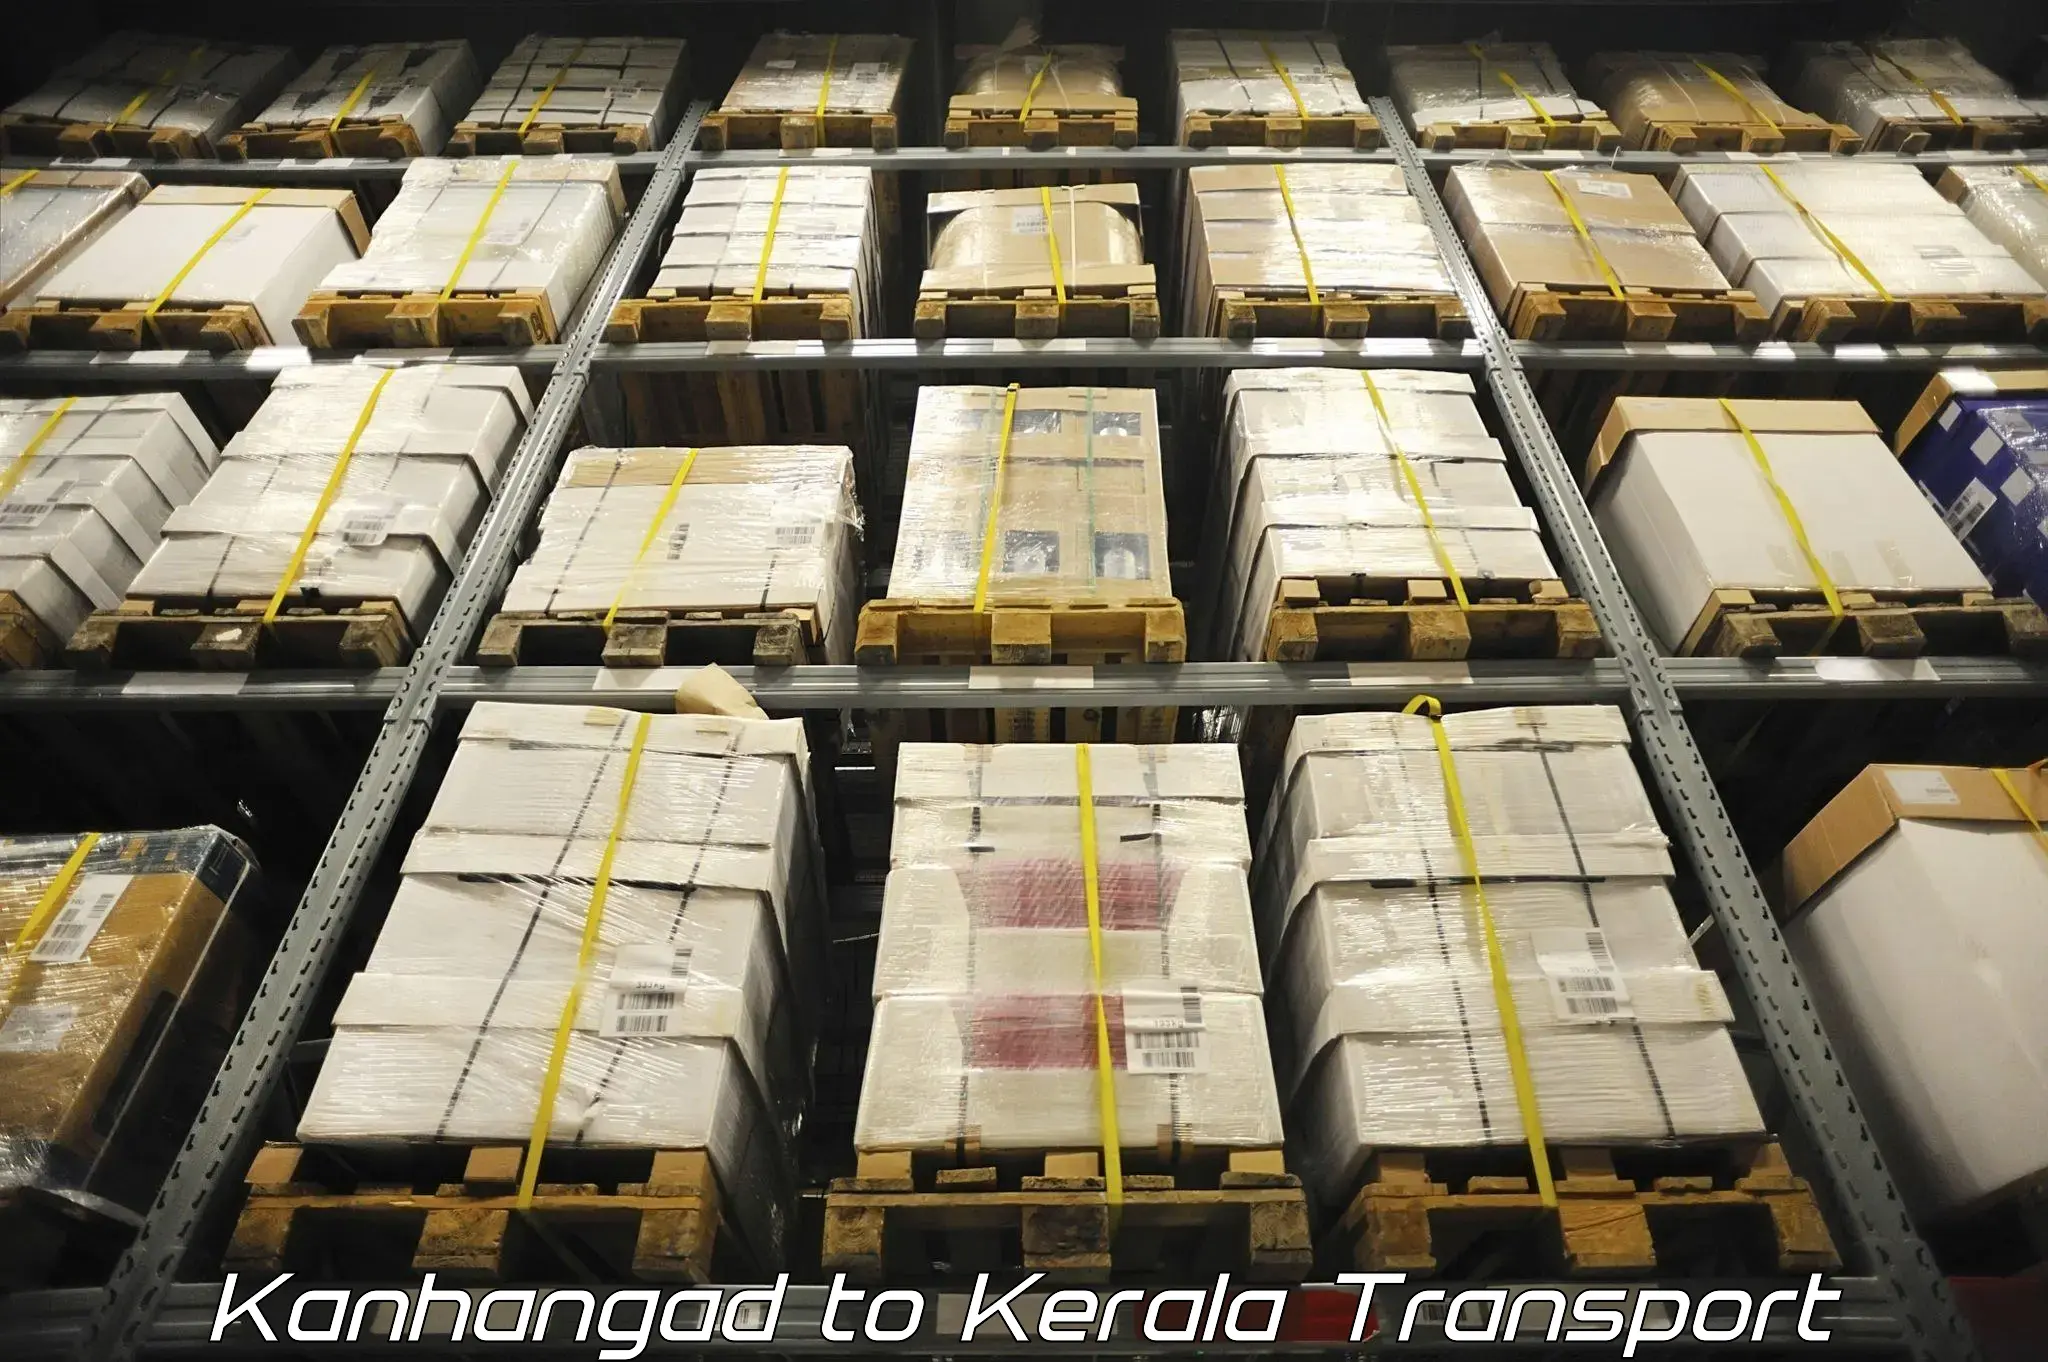 Truck transport companies in India Kanhangad to Chiramanangad